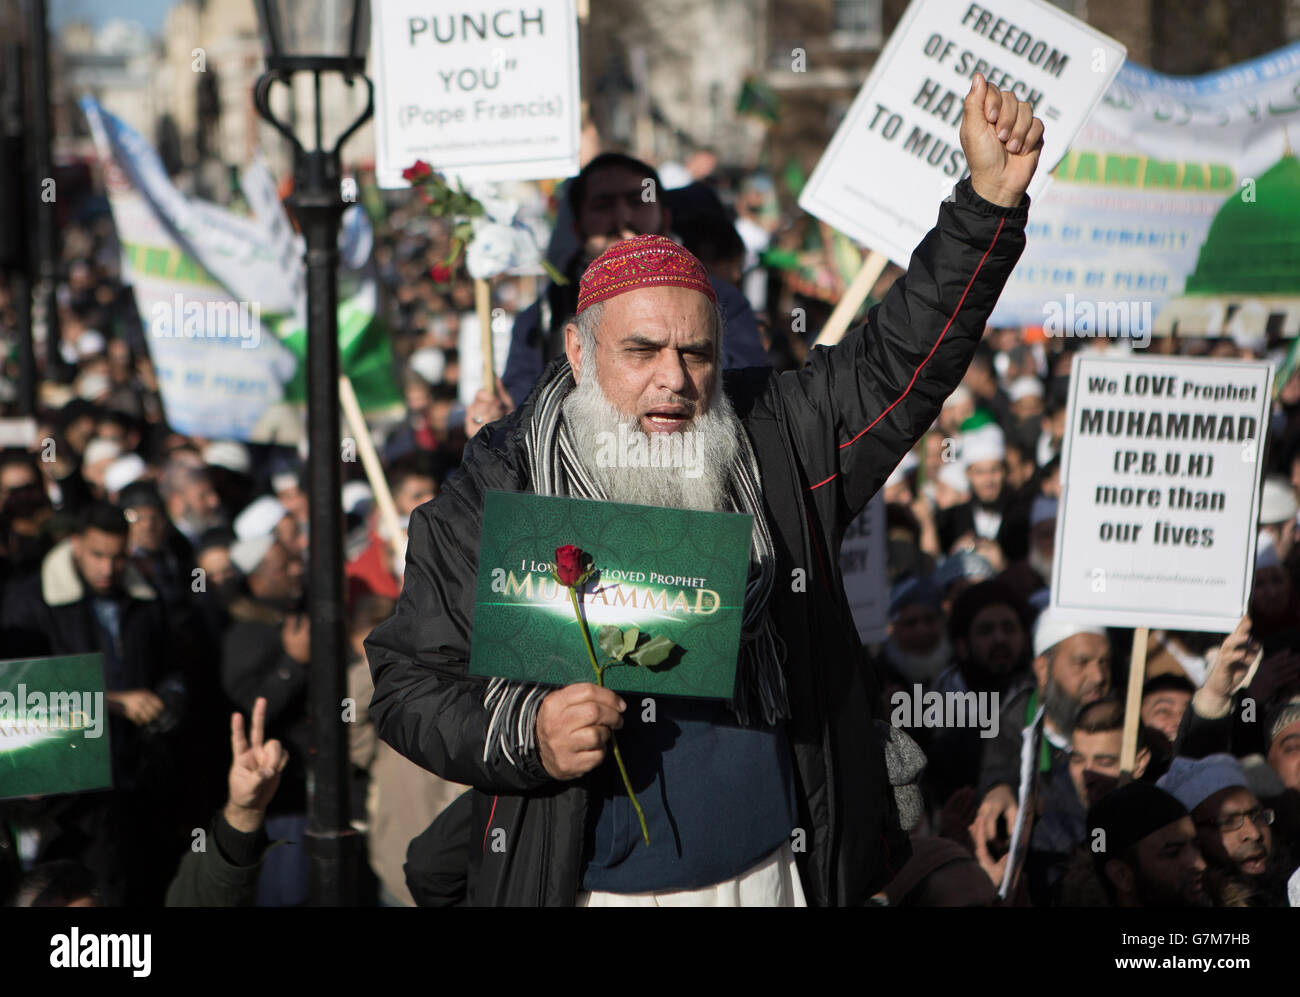 Muslime versammeln sich in einer Demonstration vor der Downing Street im Zentrum von London, fordern muslimische Werte und verurteilen die Karikaturen von Mohammed durch die französische Publikation Charlie Hebdo. Stockfoto